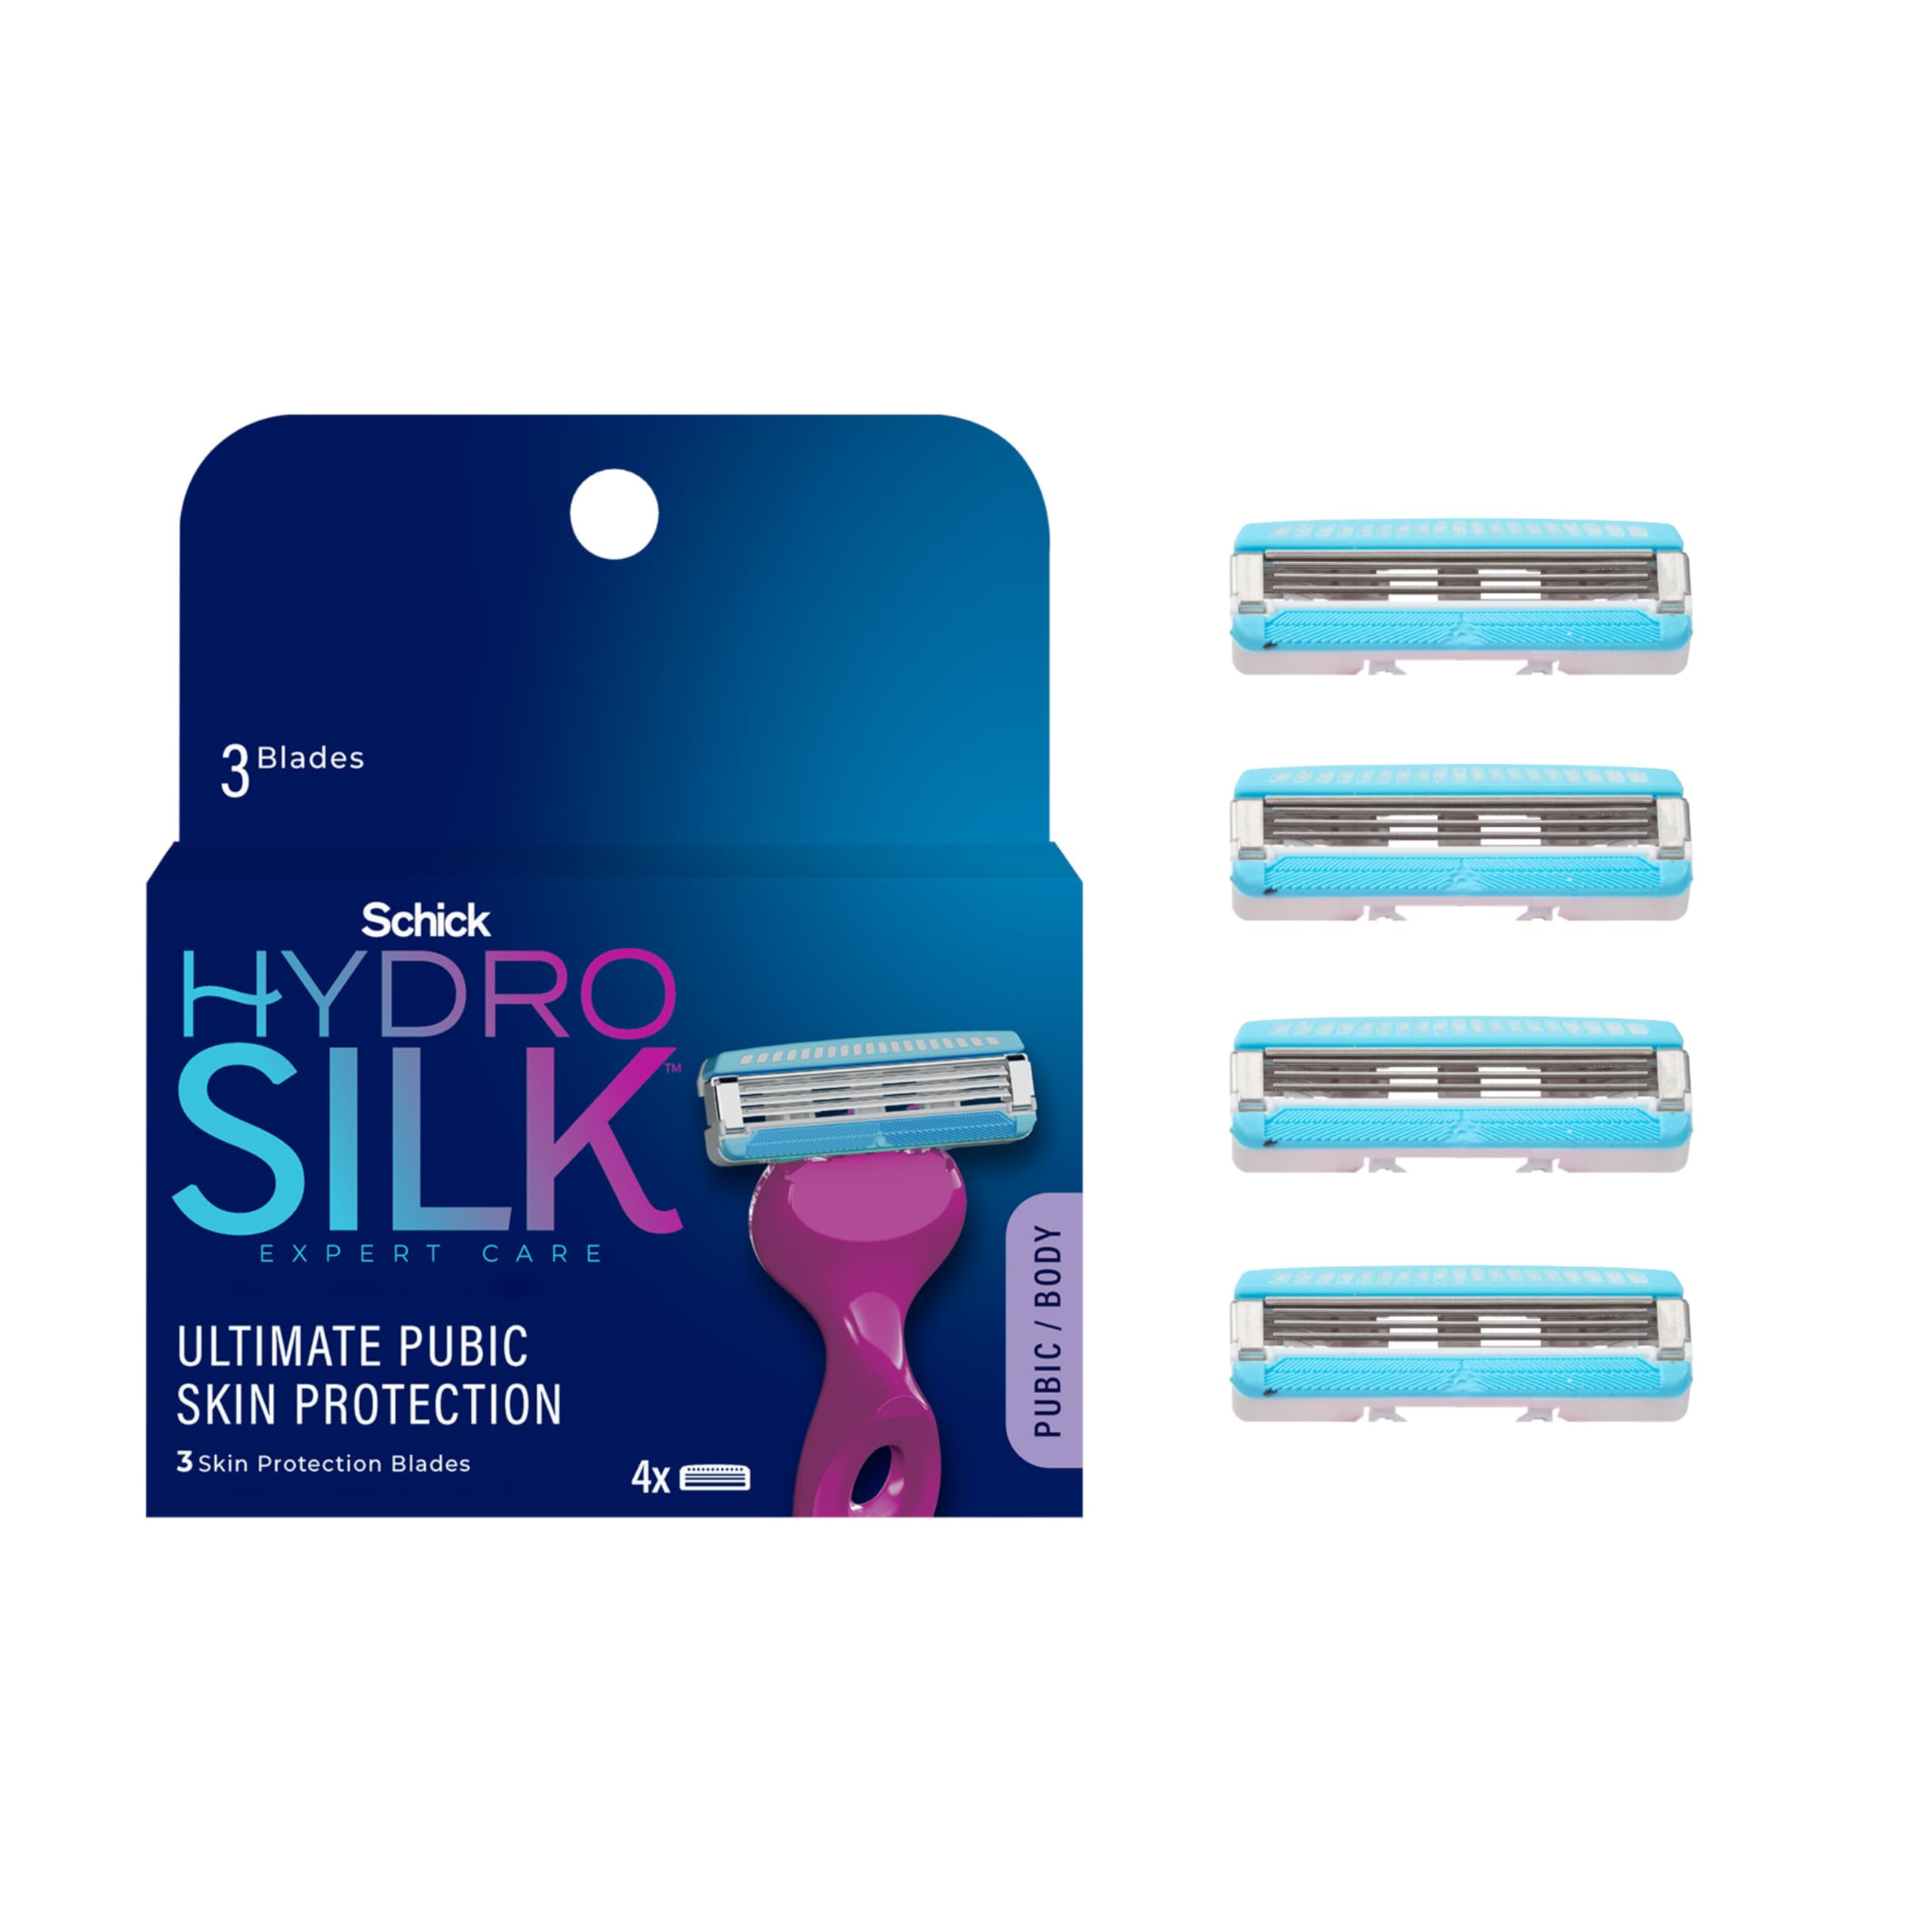 Schick Hydro Silk Pubic Razor for Women - 4 Count Refills